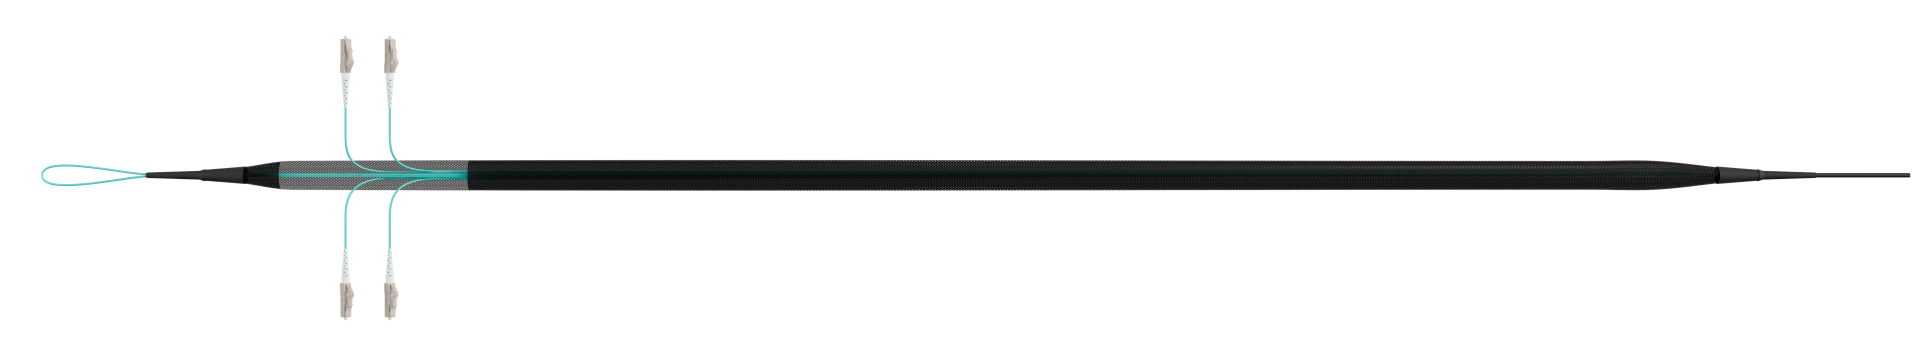 Trunk cable U-DQ(ZN)BH OM3 4G (1x4) LC-LC,170m Dca LSZH